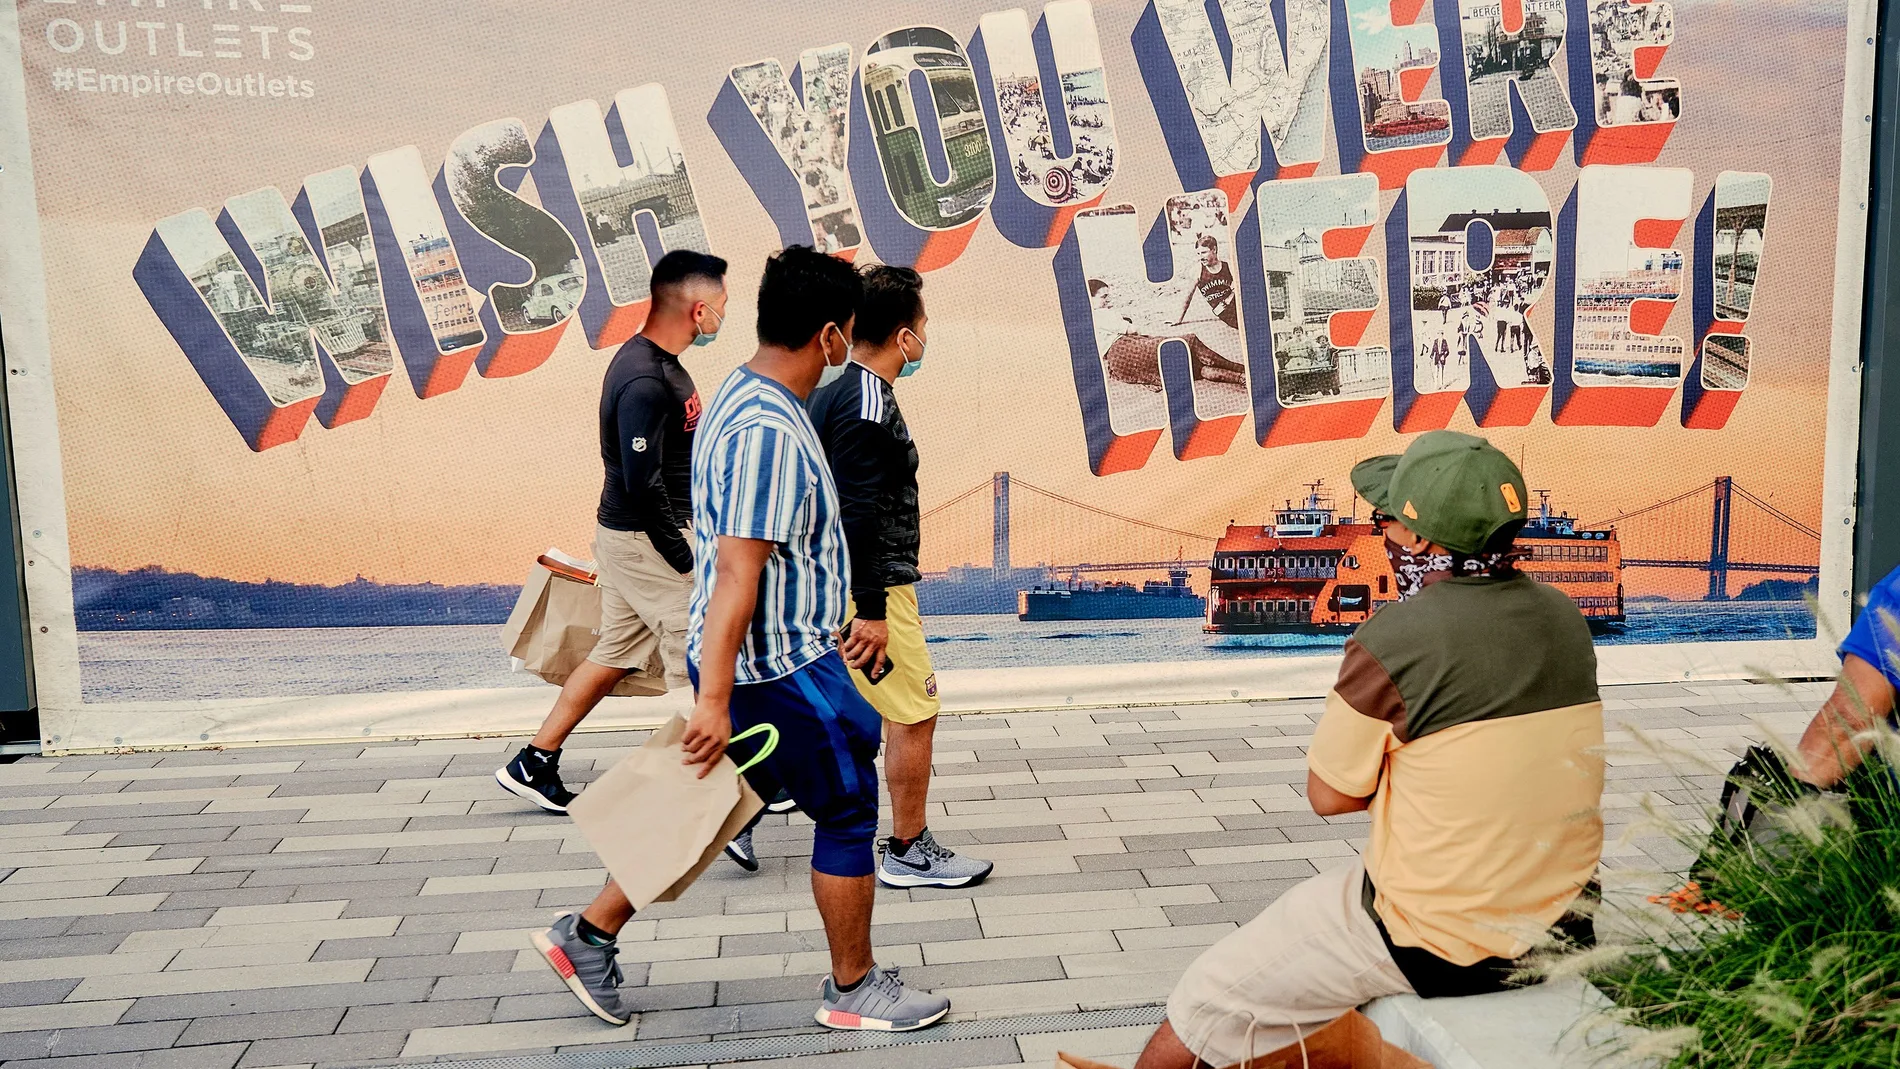 Fotografía cedida por NYC & Company, oficina de promoción turística de Nueva York, donde aparecen unas personas mientras caminan frente a un mural pintado con la icónica tarjeta postal que dice "Wish you were here"